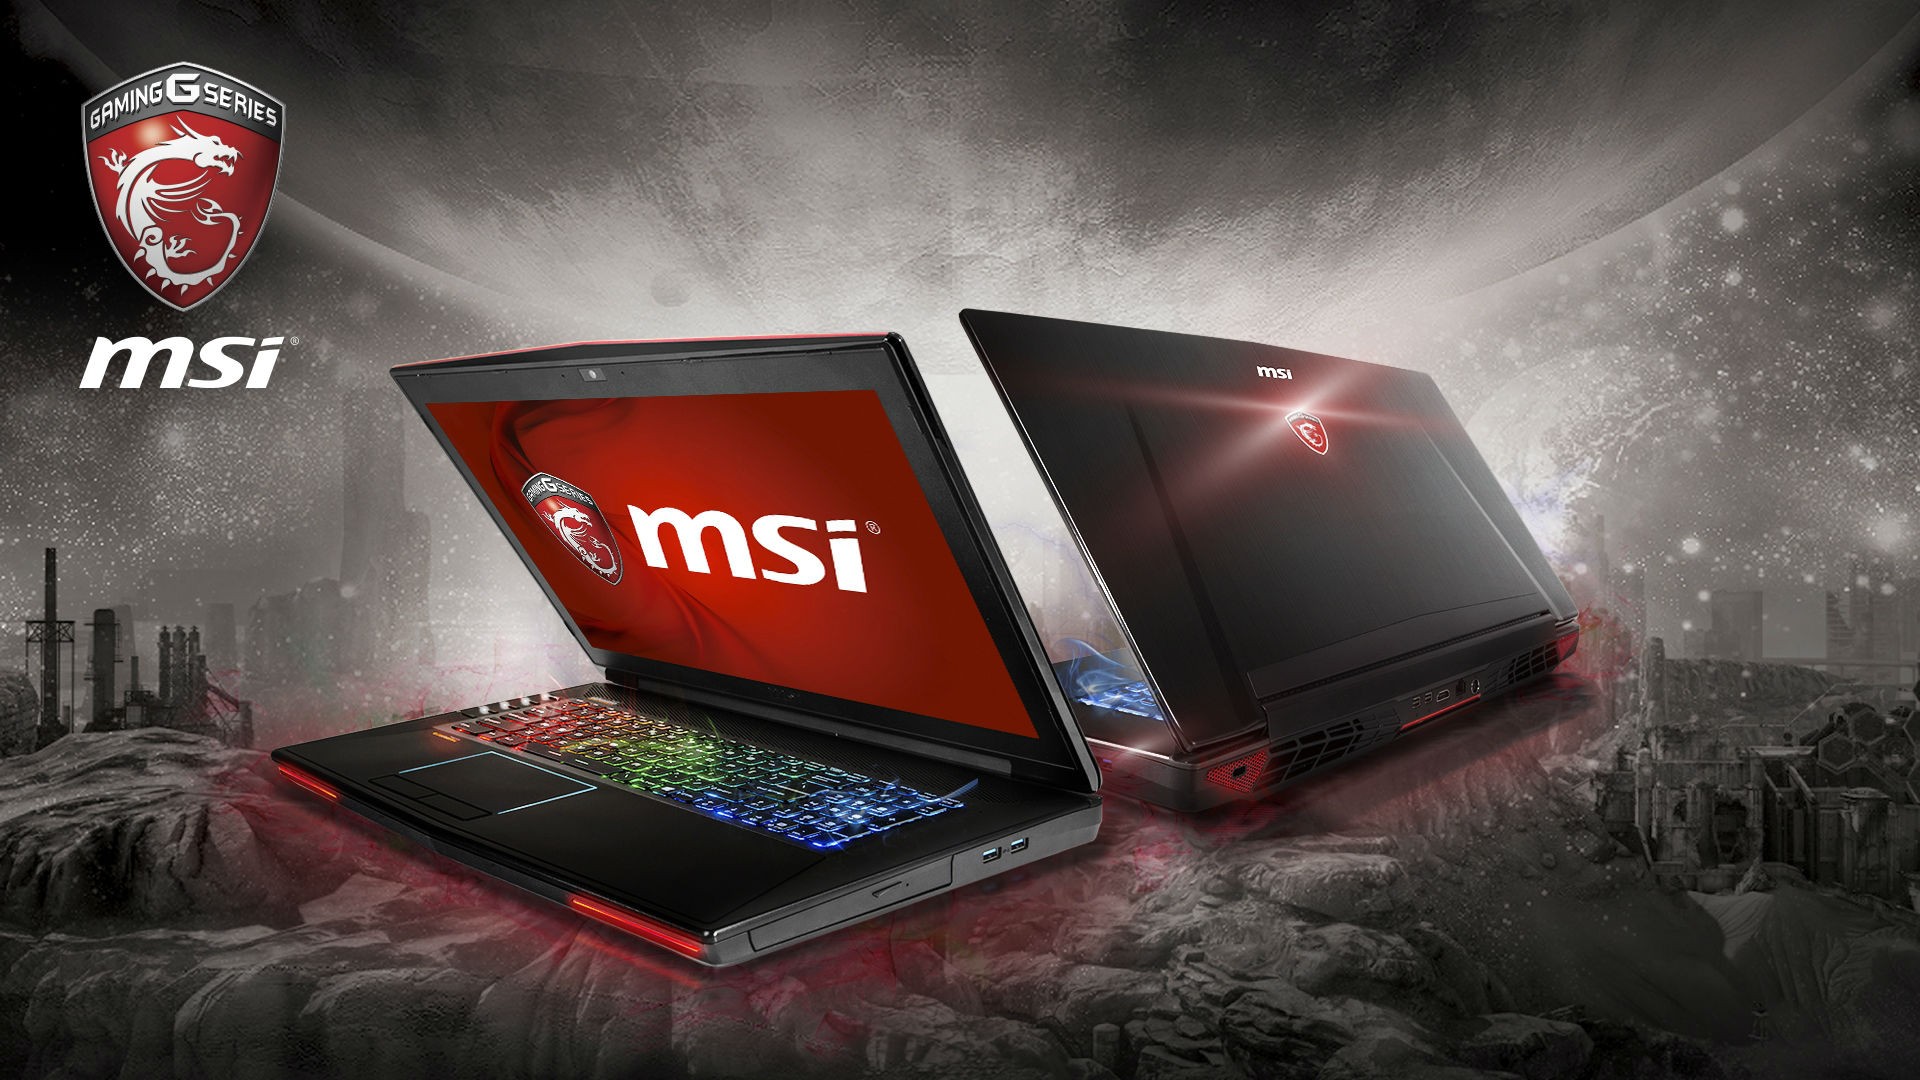 MSI công bố siêu laptop "GT72S Dominator Pro G" sử dụng GPU GTX 980 mới